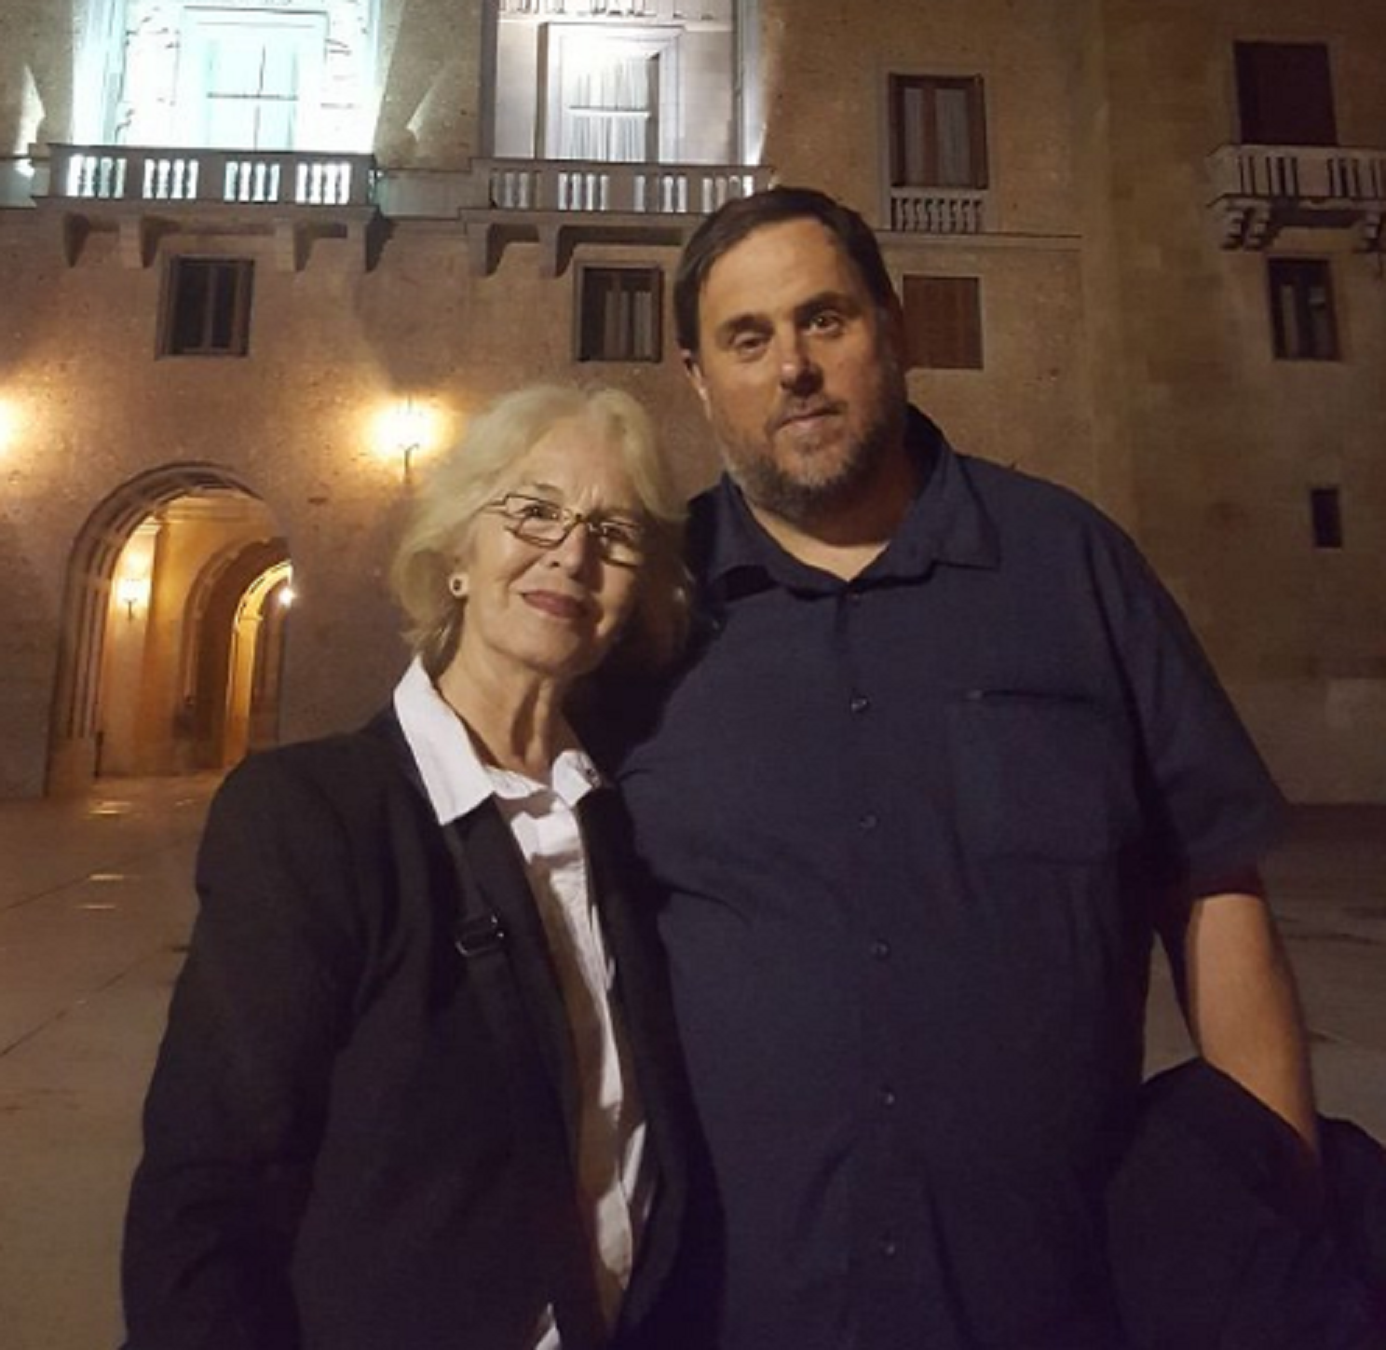 L'amiga andalusa d'Oriol Junqueras, vexada per visitar-lo: "vieja inculta"